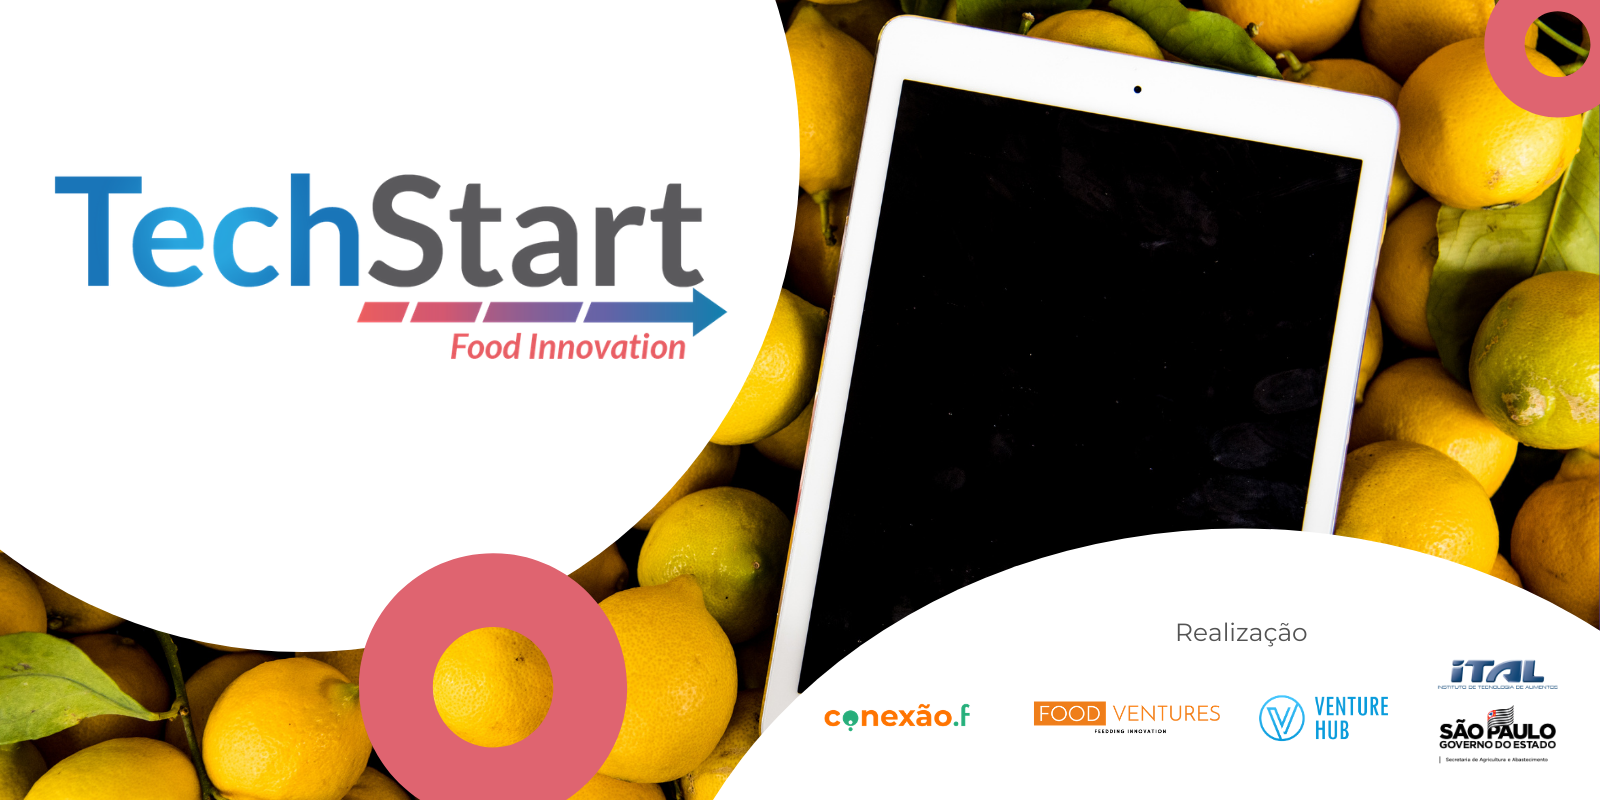 Imagem: Iniciado warm up do TechStart Food Innovation